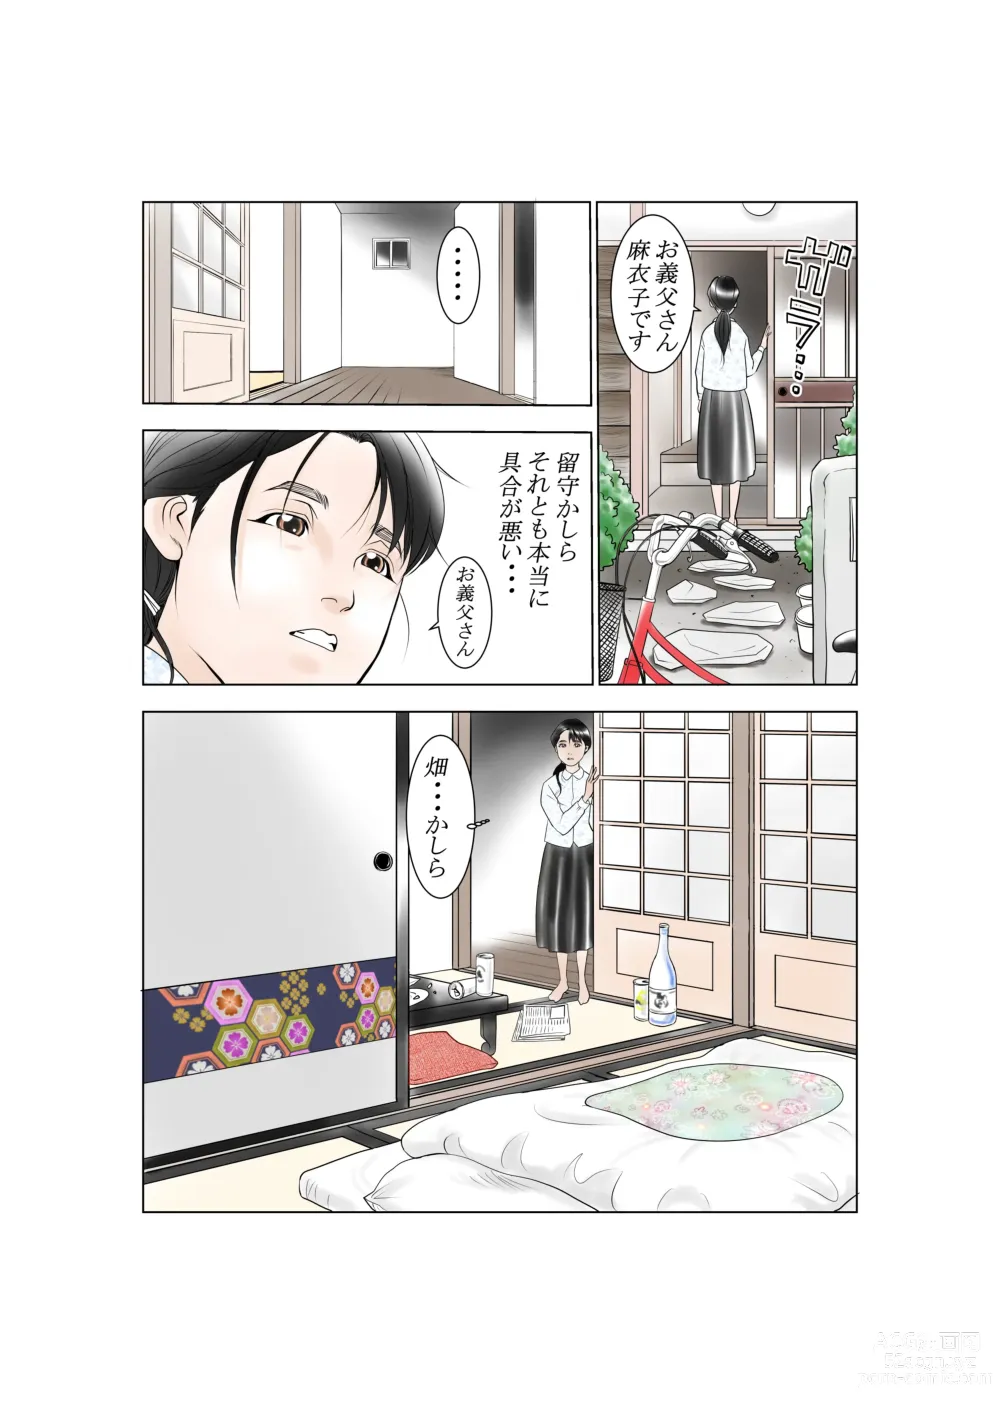 Page 8 of doujinshi D. H Danna ni Himitsu Yasuda Maiko (36-sai) no Baai